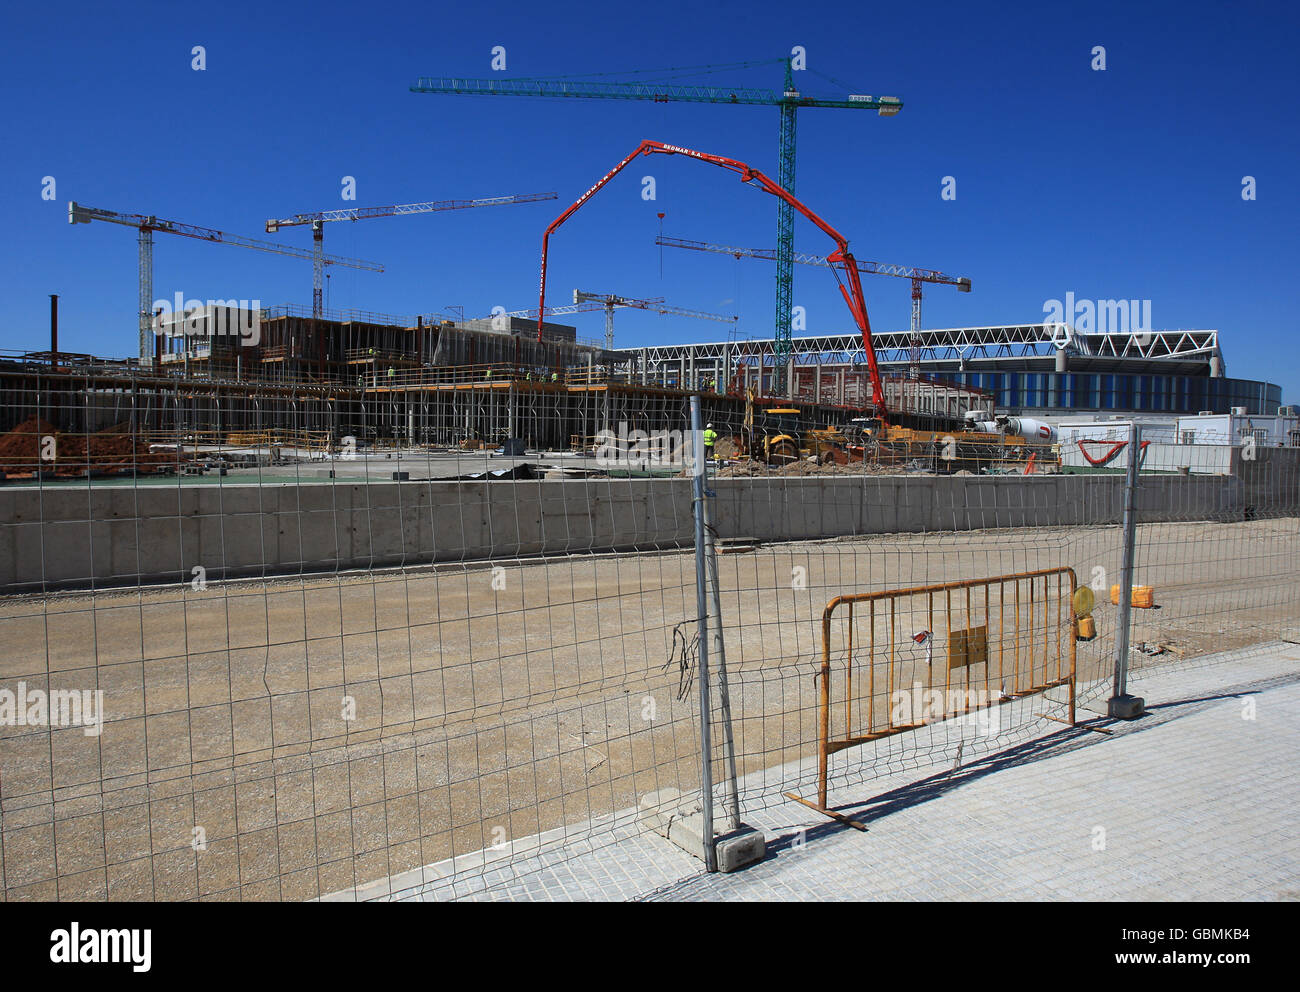 Gesamtansicht des neuen Stadions RCD Espanyol, El Estadio Cornella-El Prat, während der Bauarbeiten Stockfoto